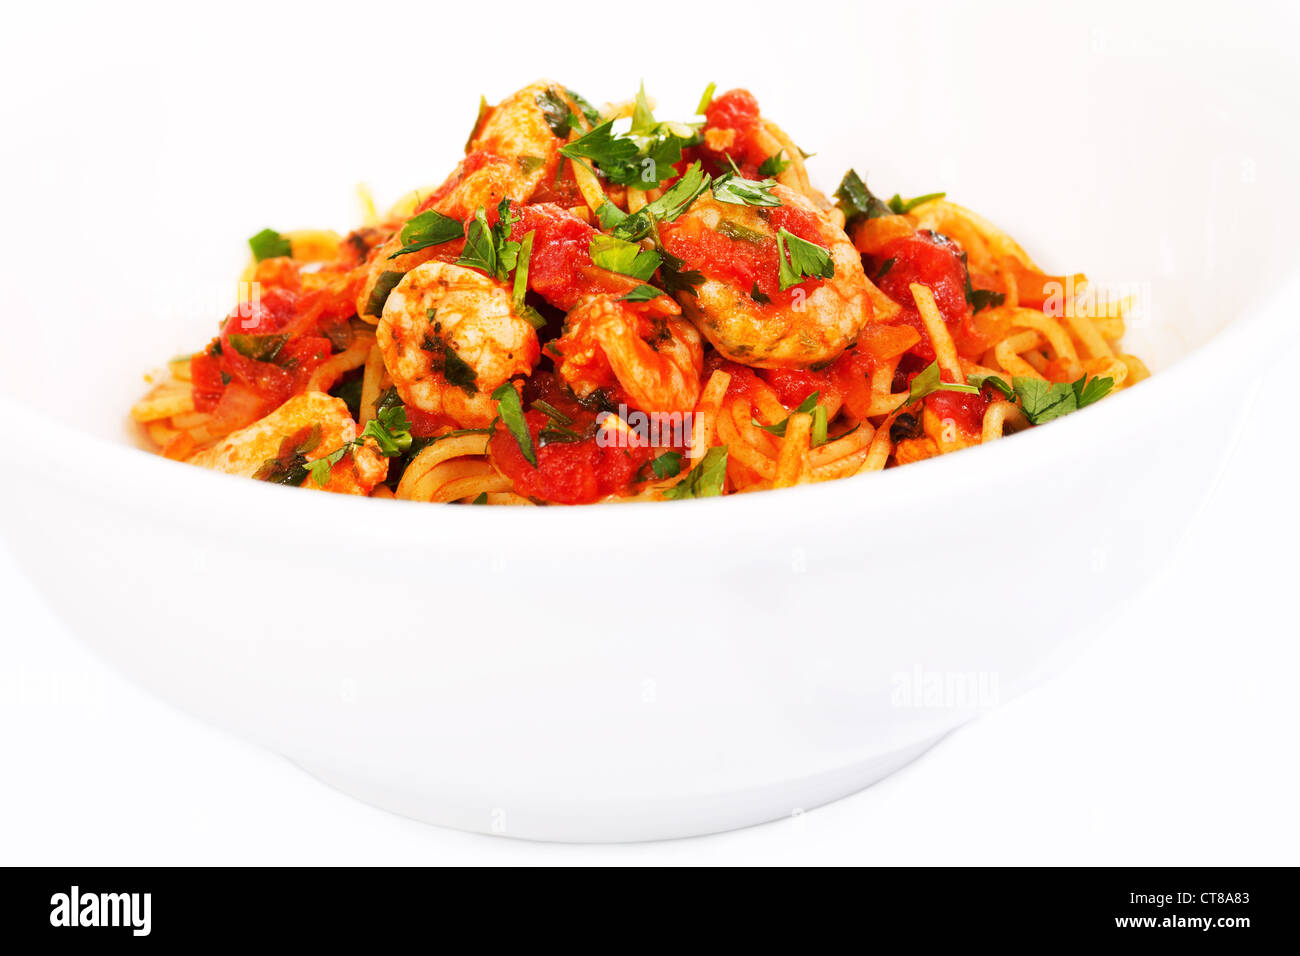 Spaghetti tomato seafood dish in white bowl Stock Photo